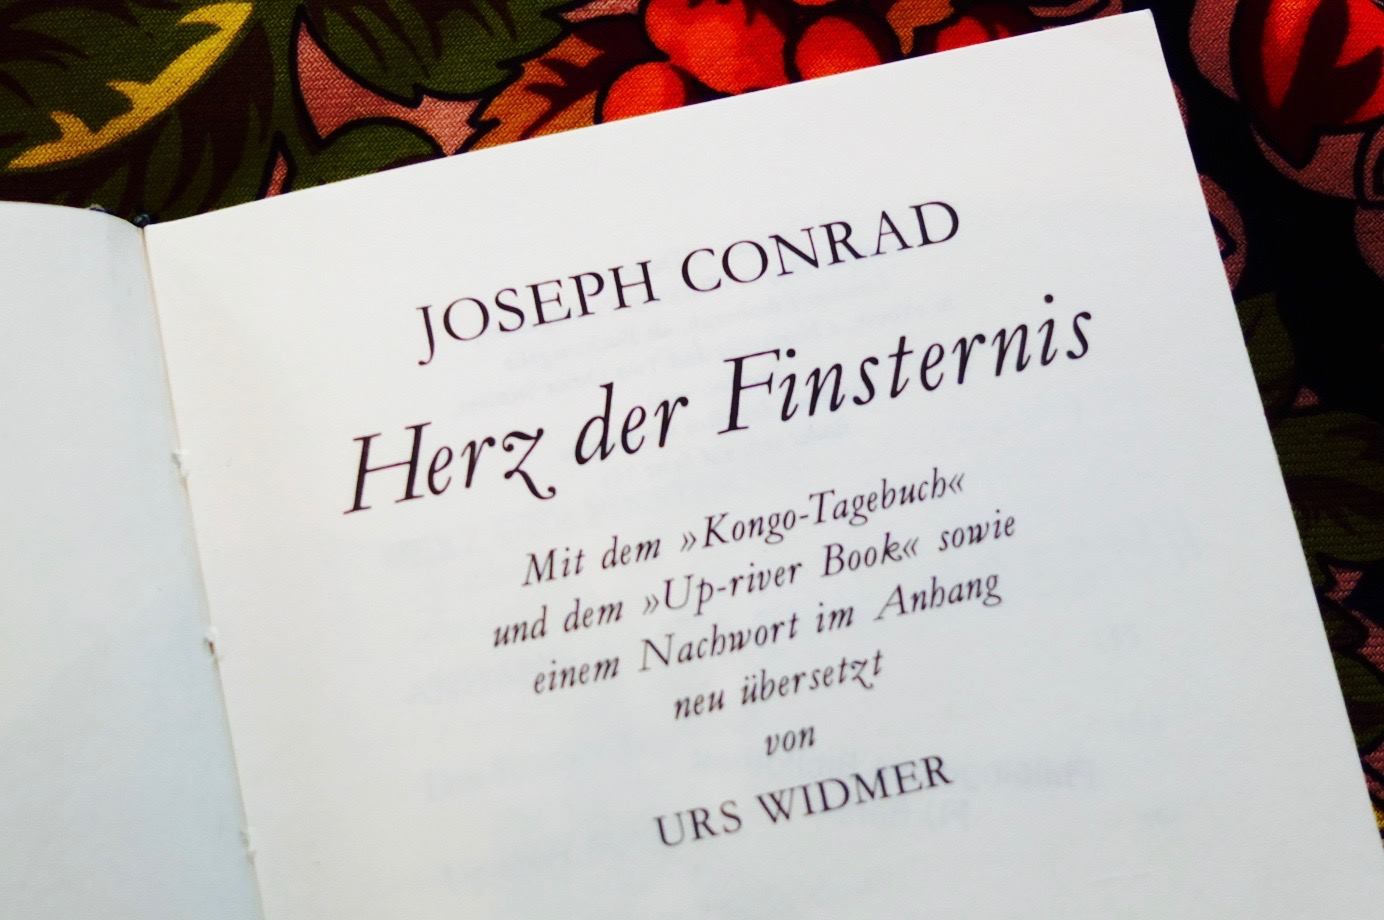 Joseph Conrad - Herz der Finsternis: Lesung & Diskussion